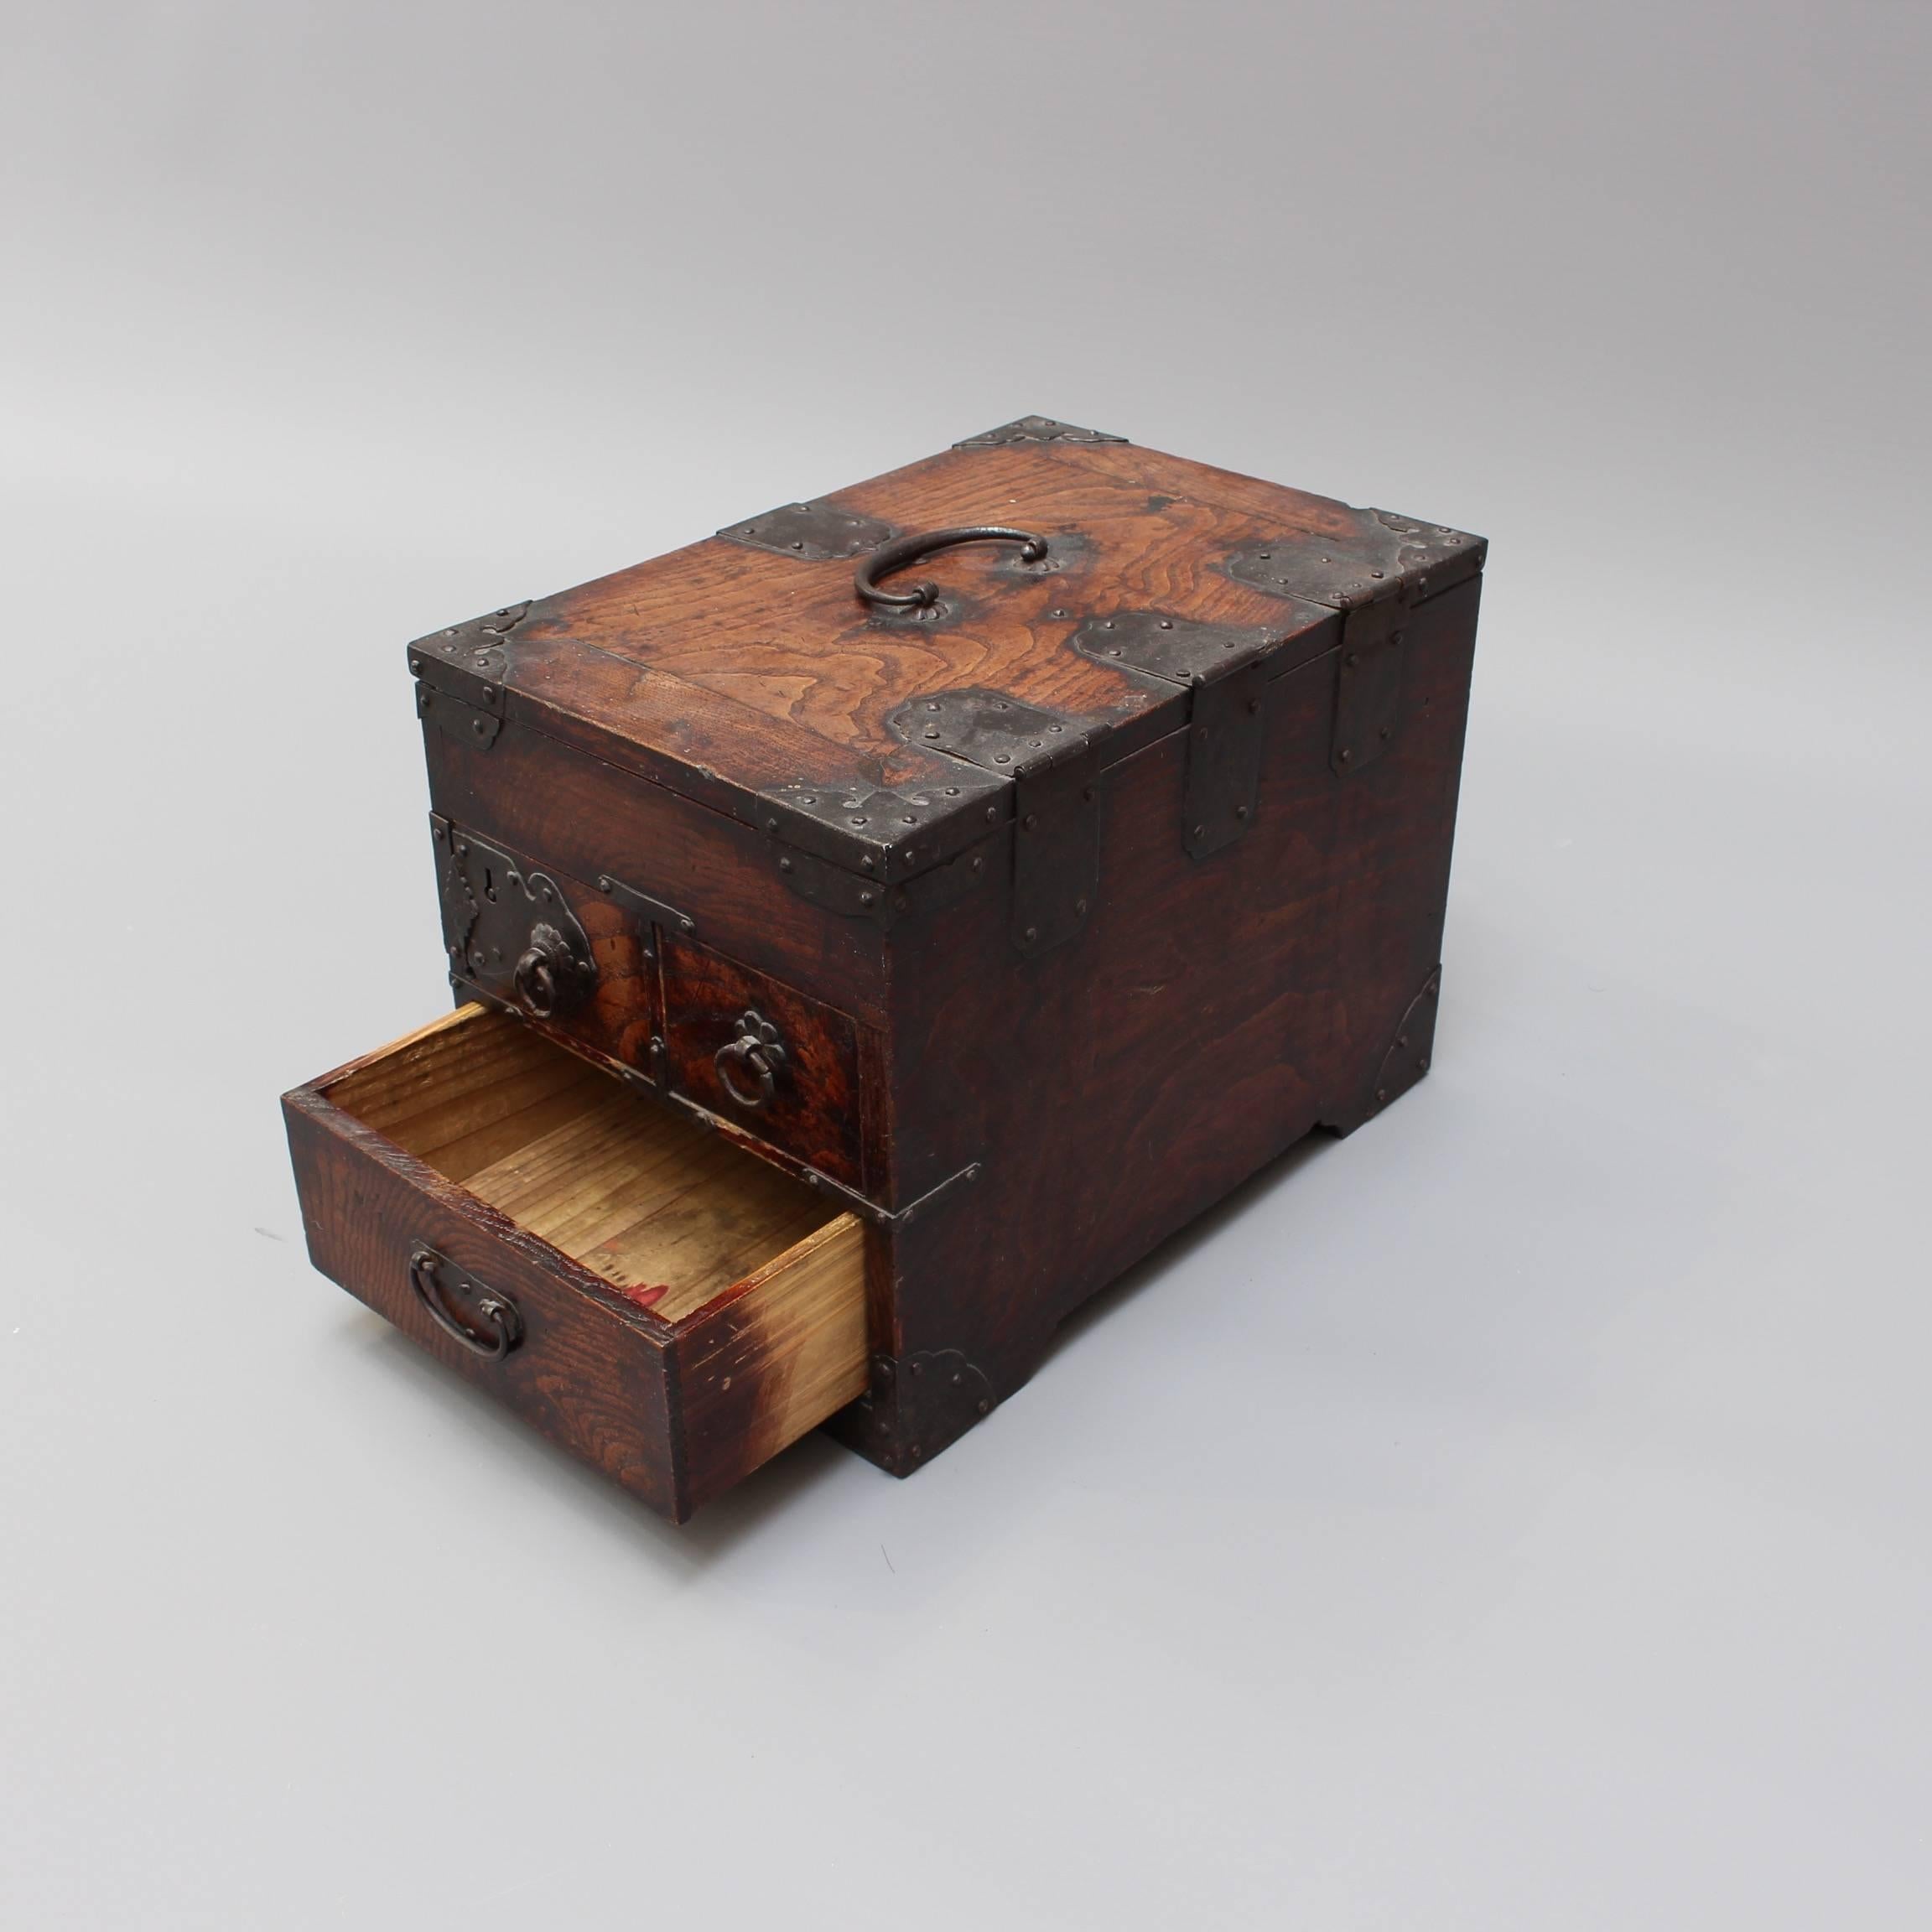 Antique Japanese Wooden Writing Box with Decorative Hardware 'Meiji Era' 5